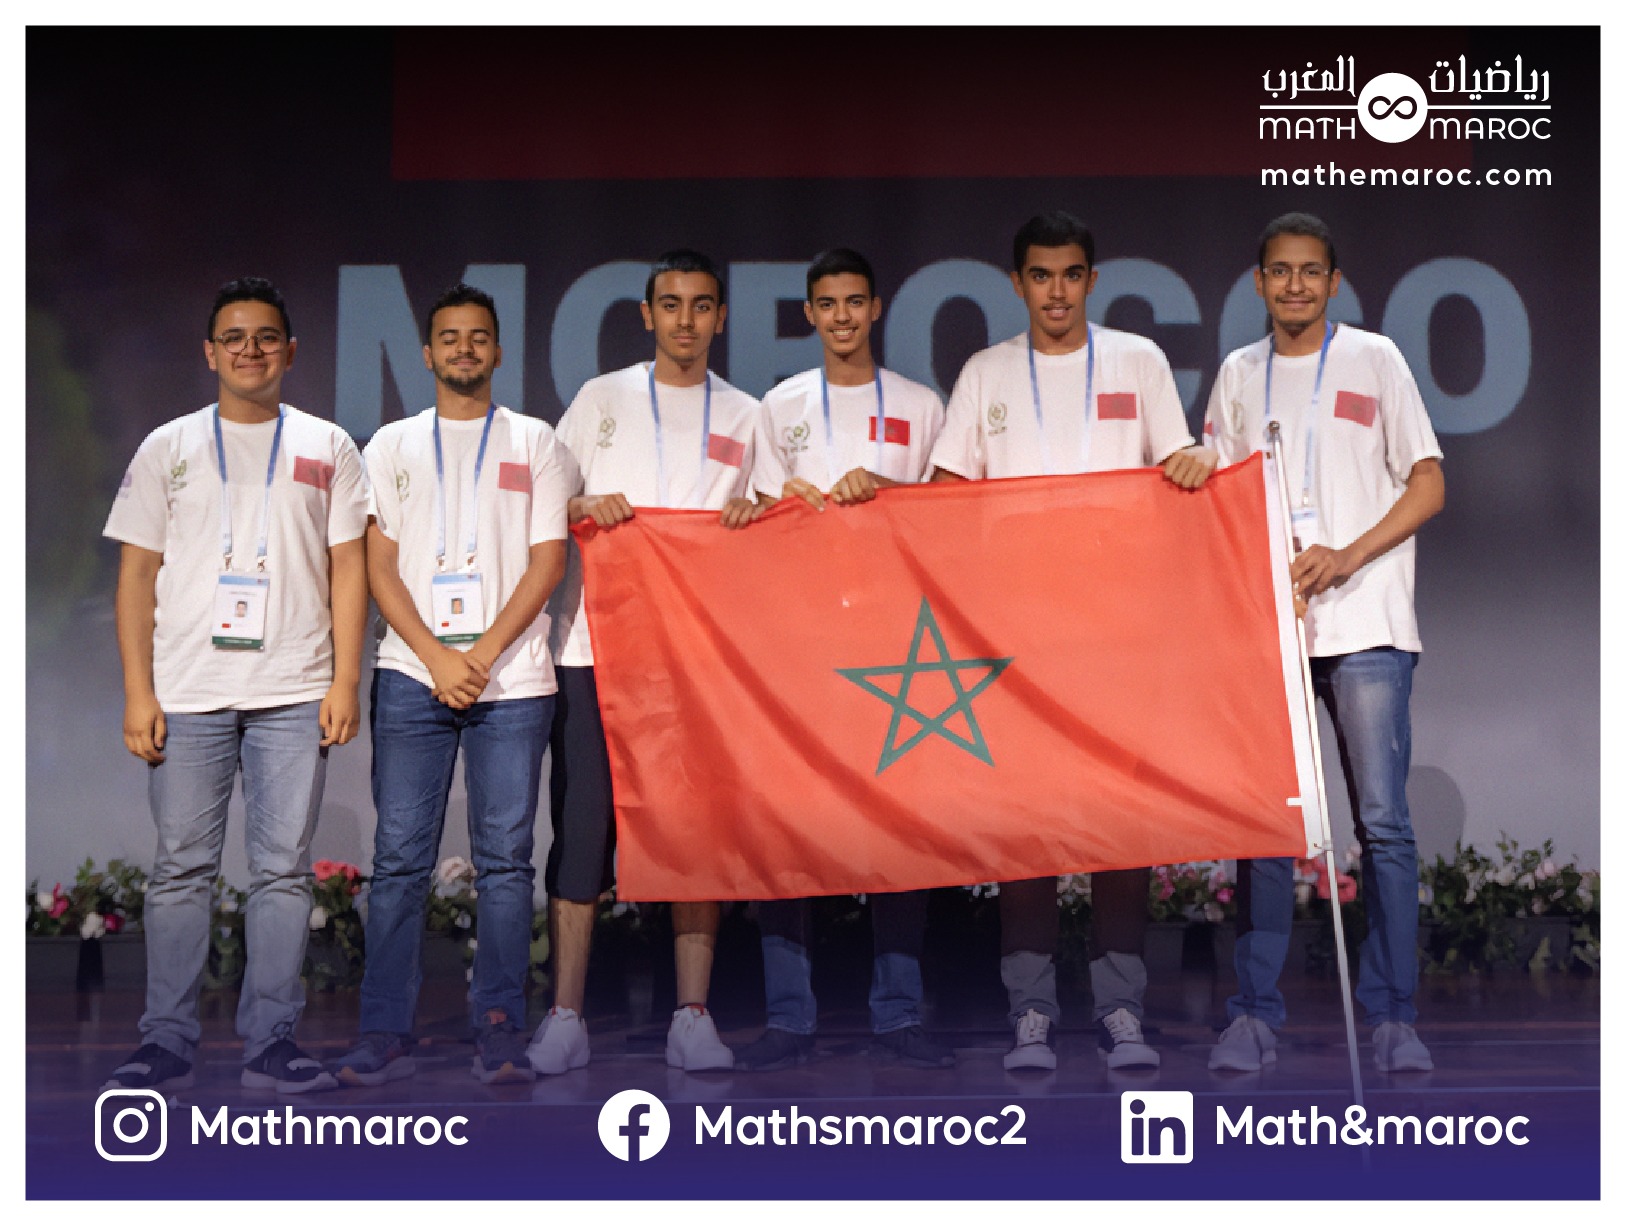 الفريق الوطني لأولمبياد الرياضيات يحصد أربع ميزات شرفية!